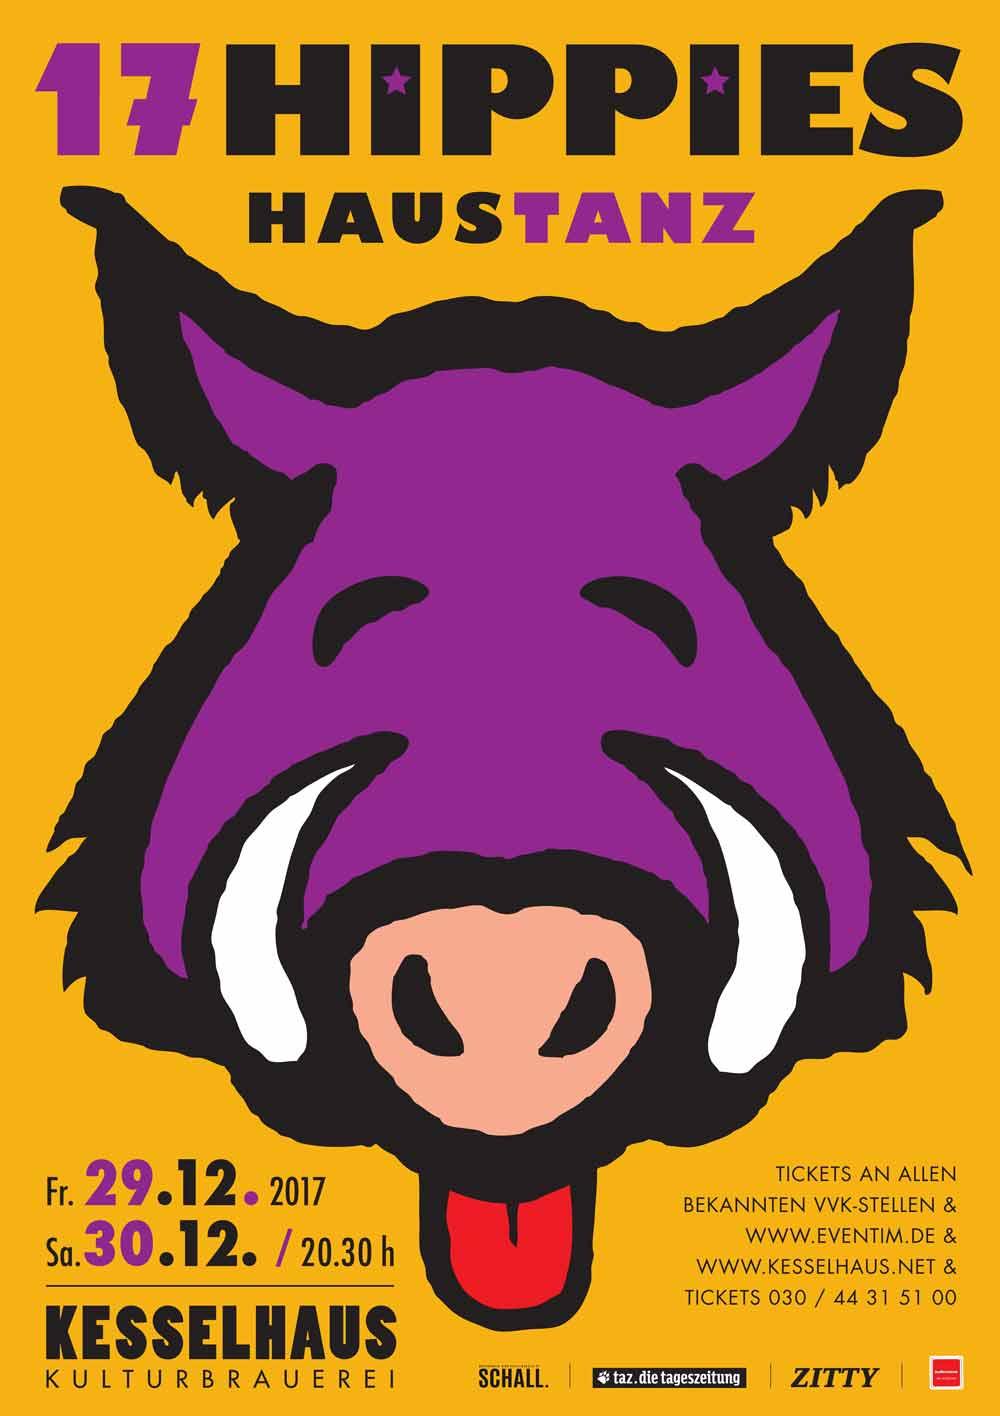 Plakat 17 Hippies Haustanz 2017